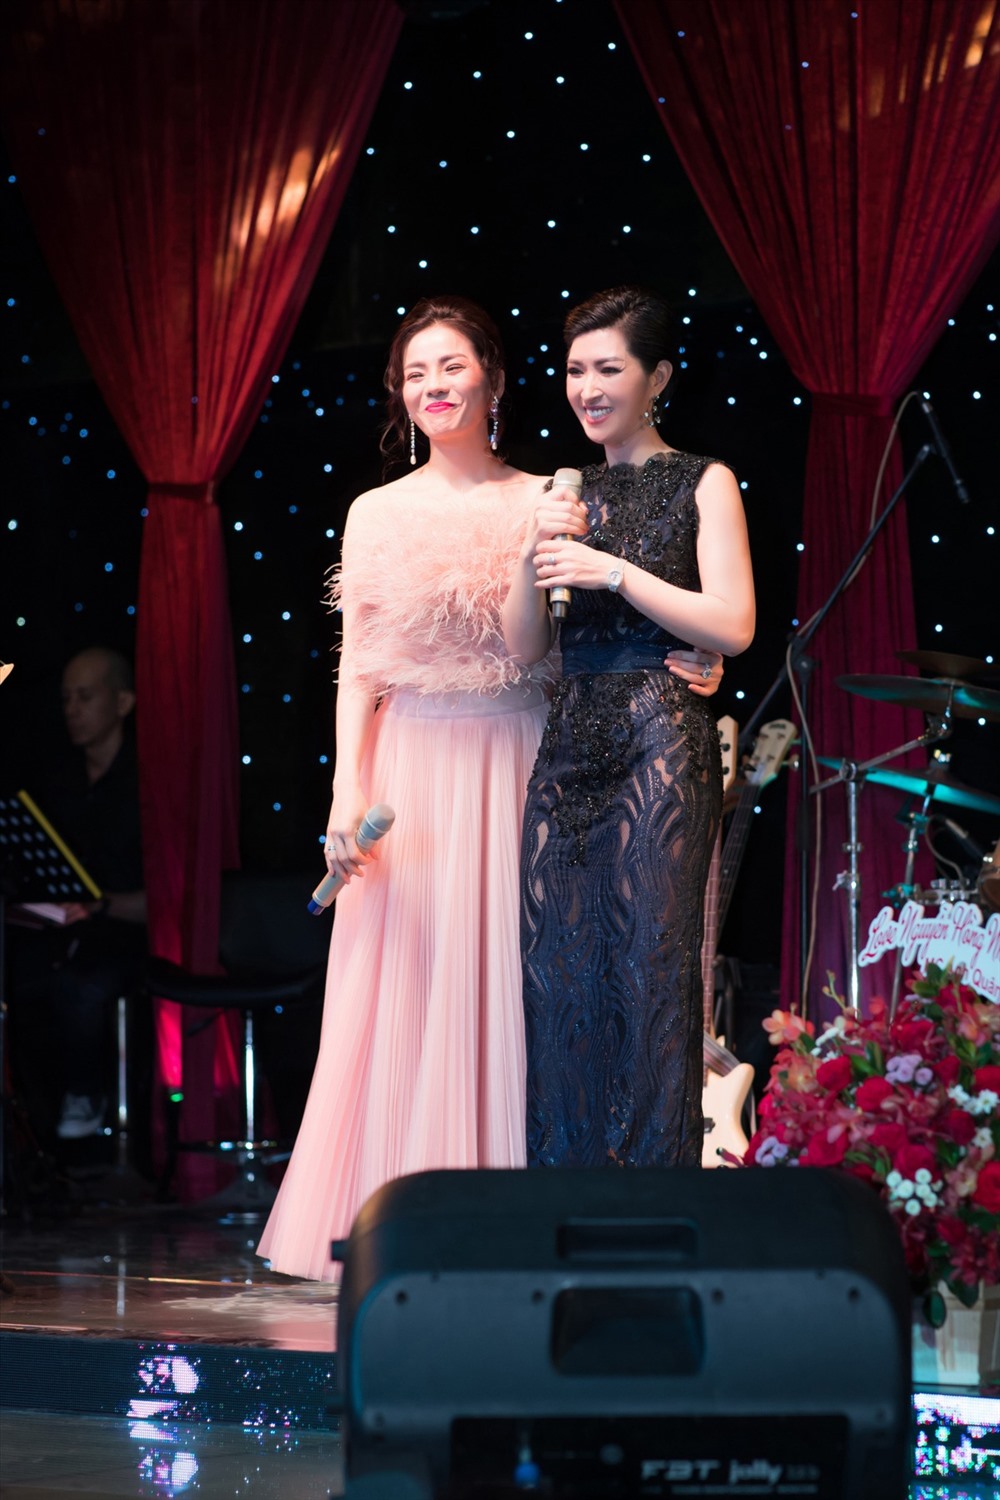 Đây là đêm nhạc đặc biệt của Nguyễn Hồng Nhung dành tặng cho khán giả Sài Gòn trước nhiều lời đề nghị và ủng hộ từ khán giả, trong đó phải kể đến cô bạn thân là nữ ca sĩ Lệ Quyên.